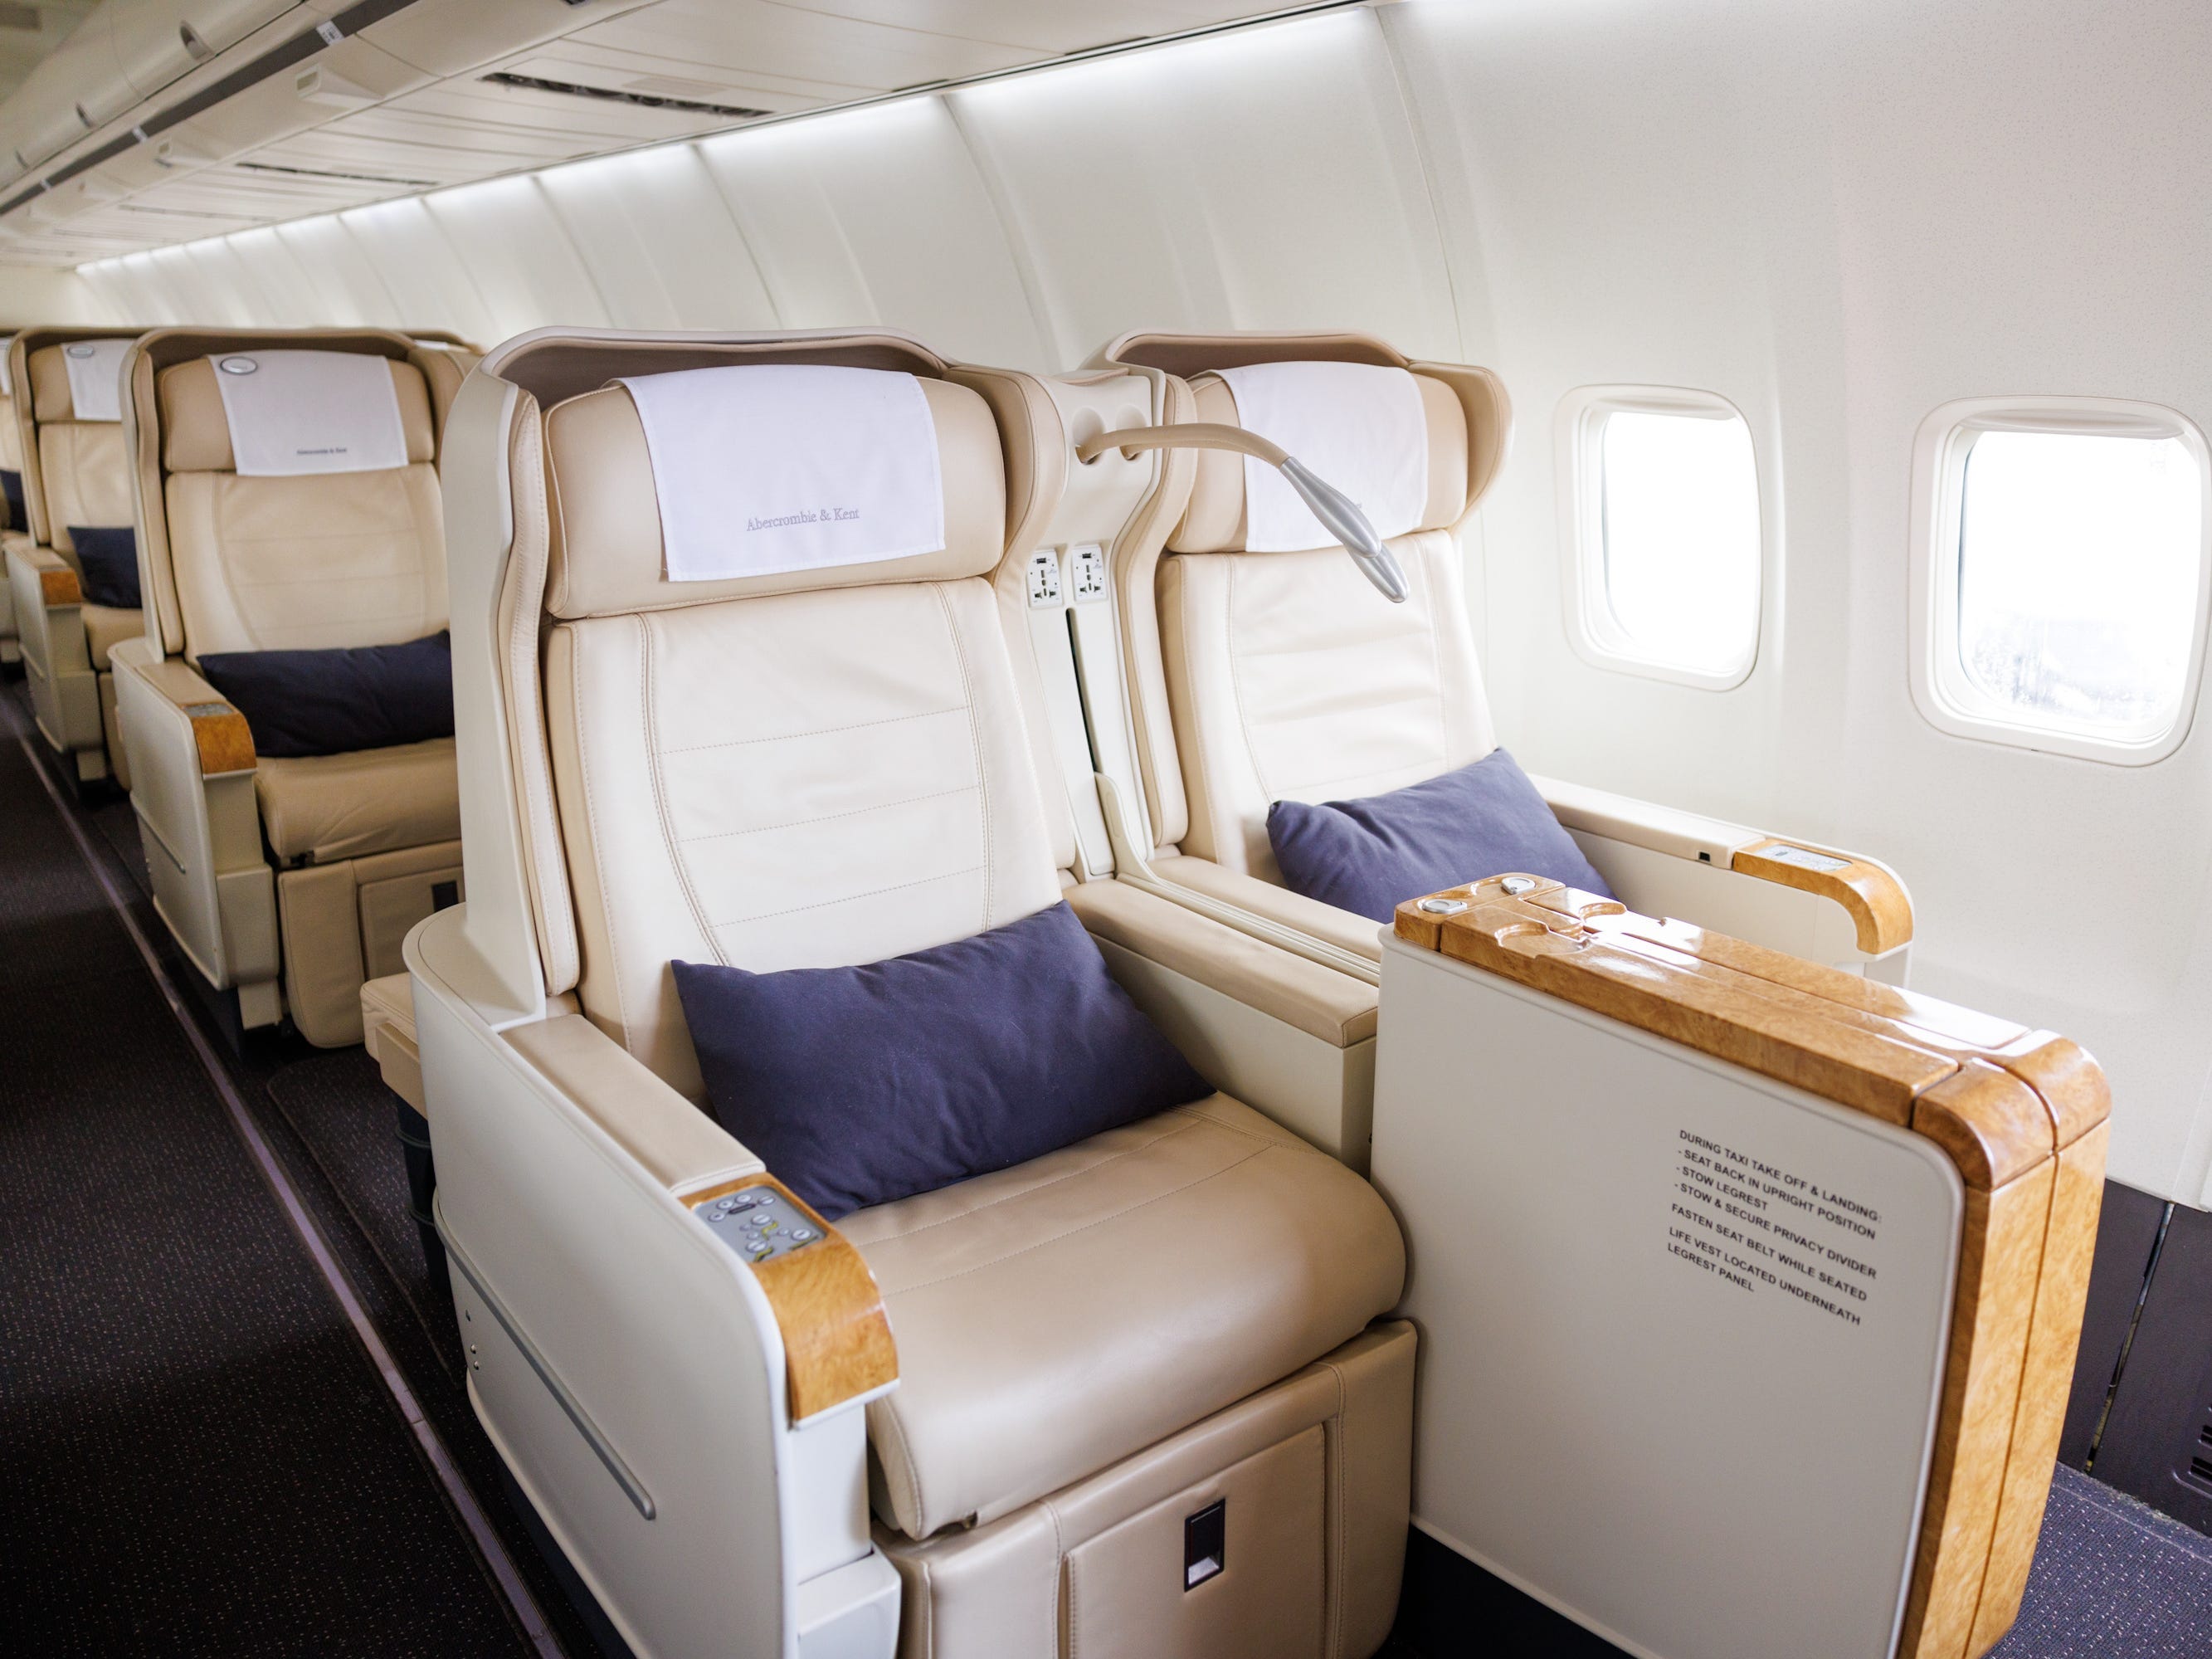 Reihen cremefarbener Sitze an Bord der Boeing 757 der Marke A&K, alle völlig aufrecht mit blauen Kissen auf dem Sitz.